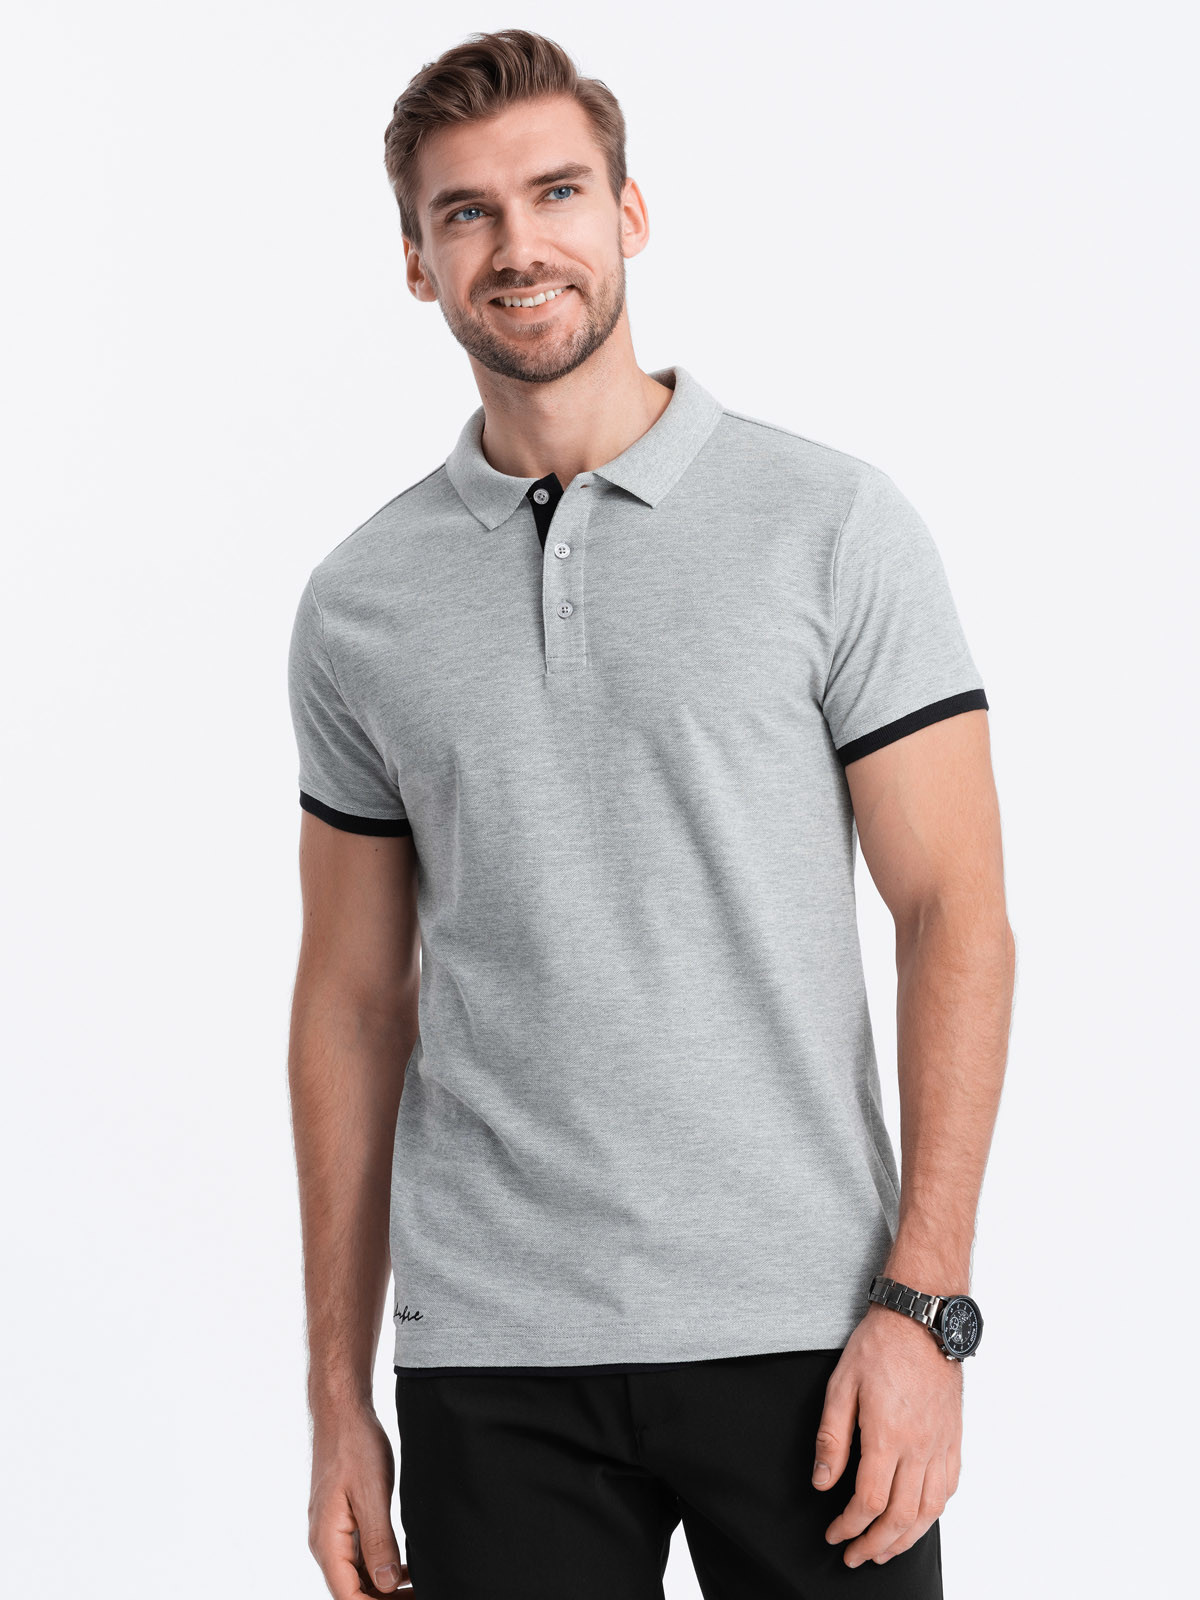 Men's cotton polo shirt - light grey V7 OM-POSS V7 OM-POSS - 0113